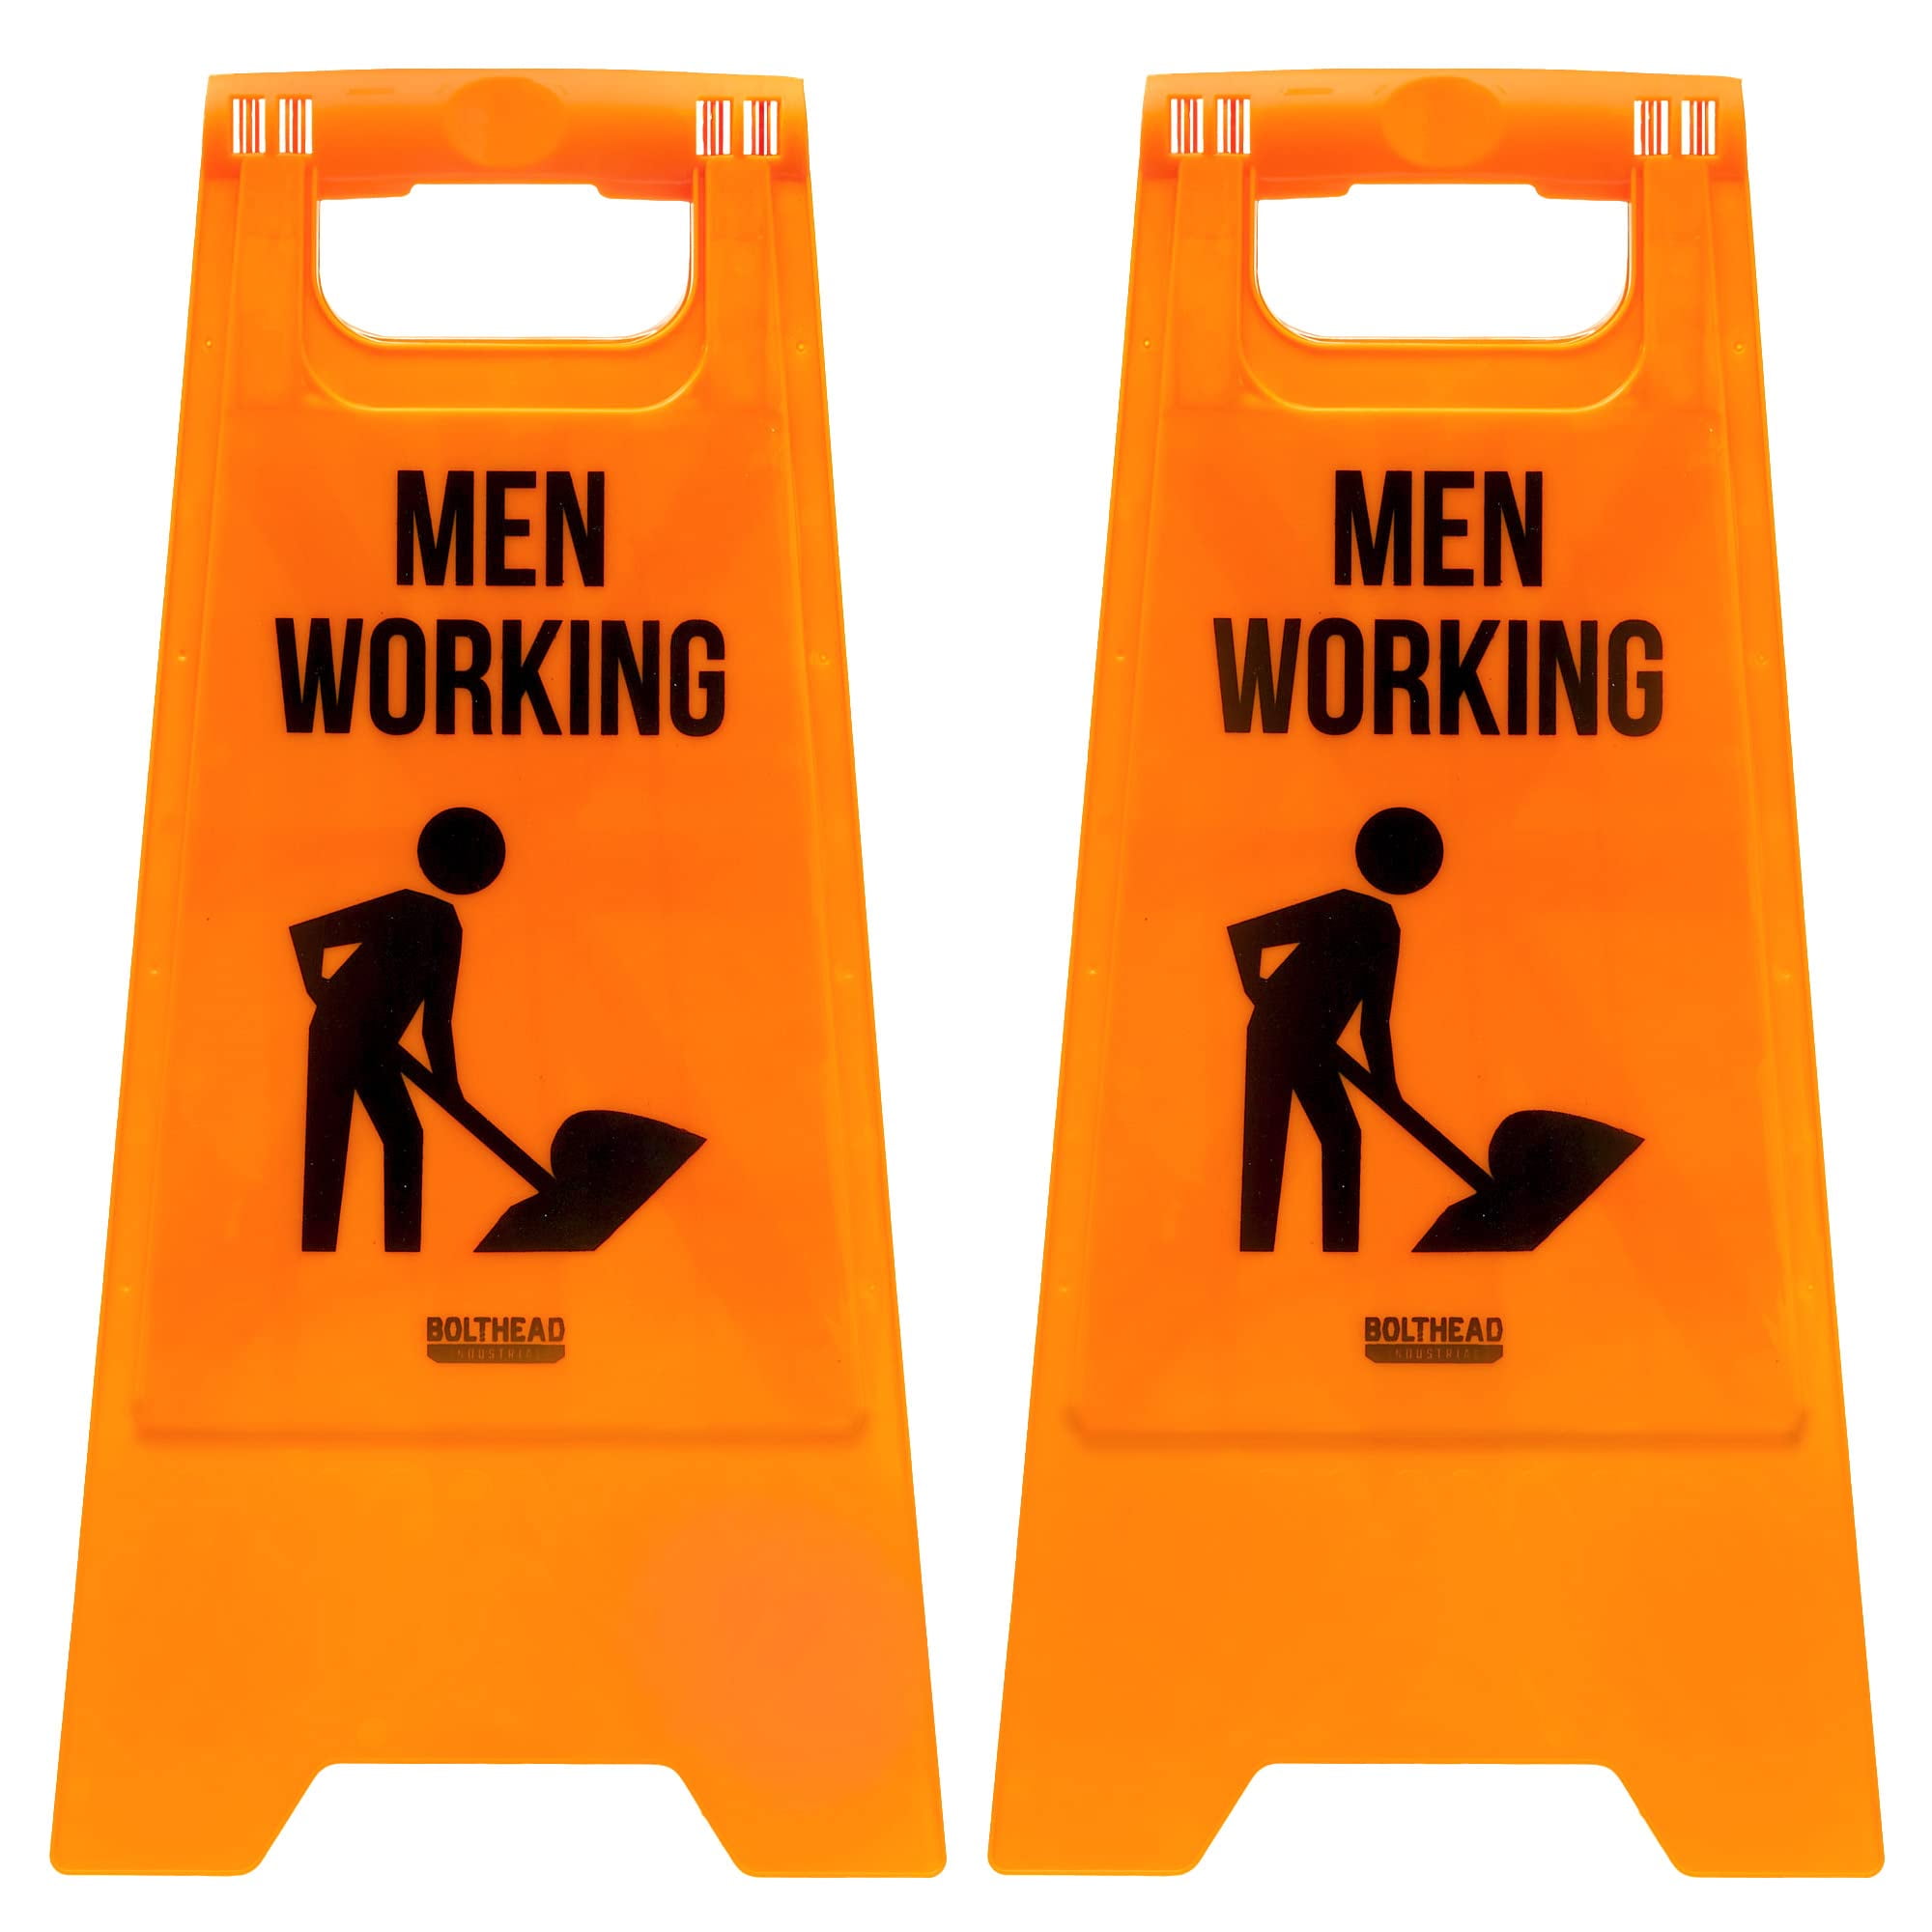 men at work orange sign